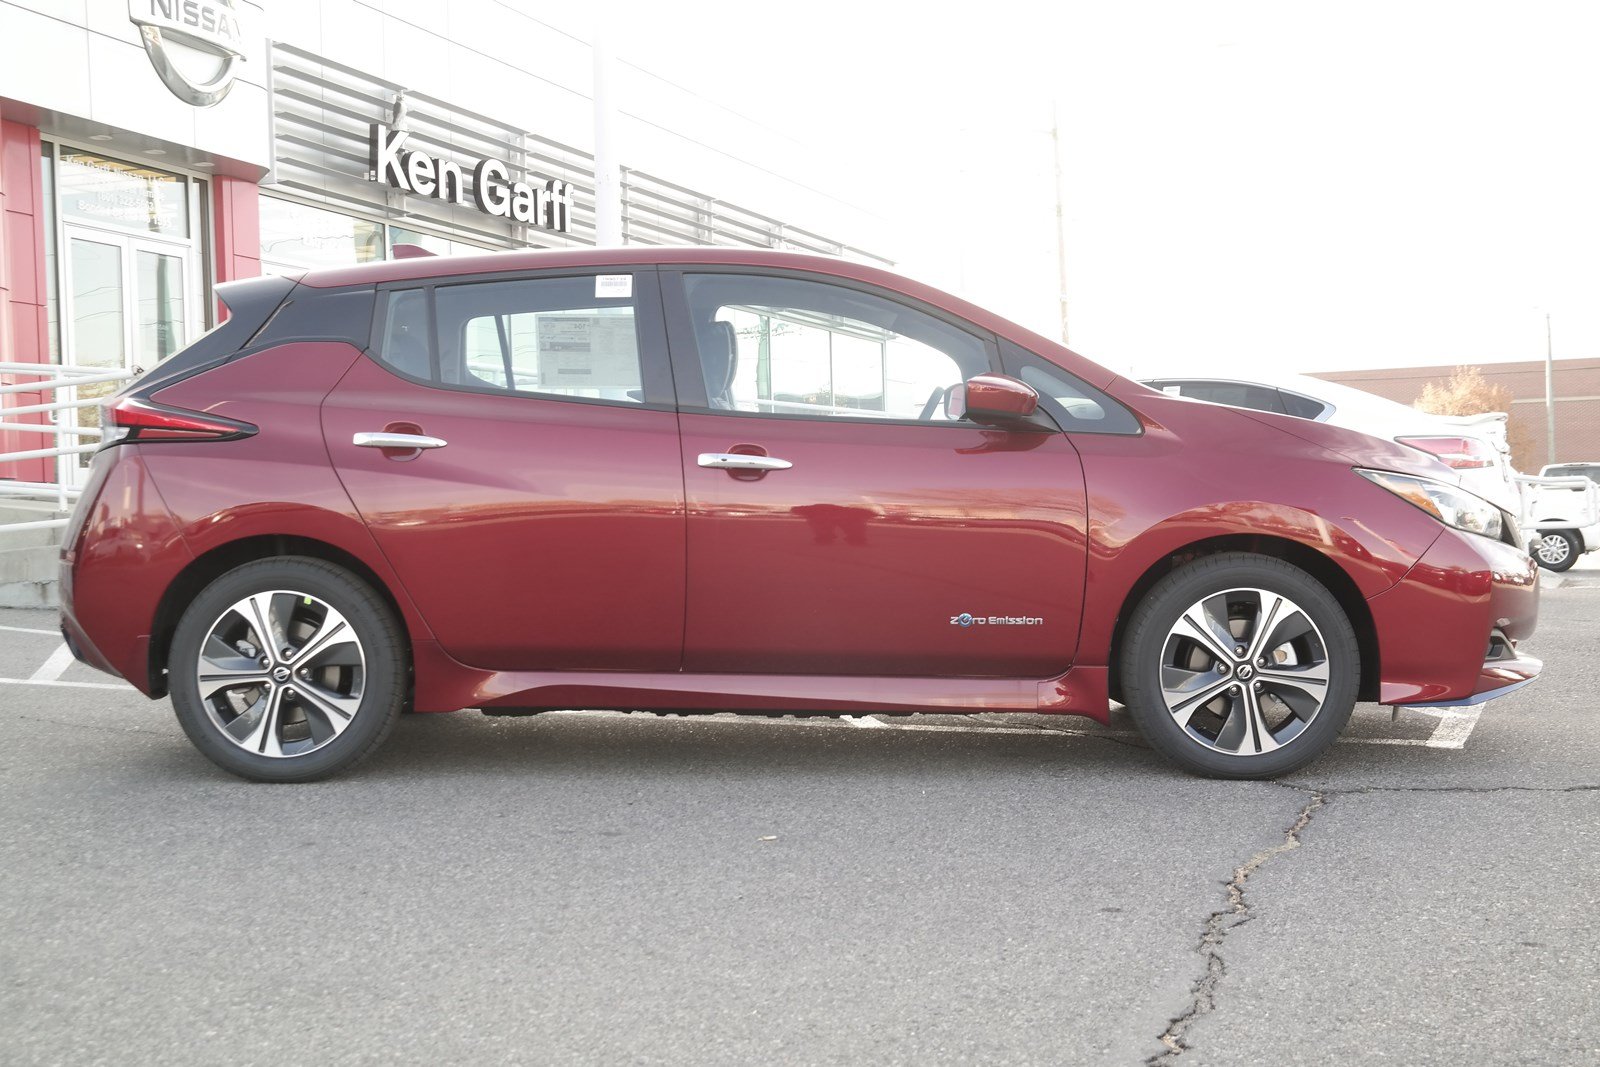 New 2019 Nissan Leaf Sv Plus Hatchback In Salt Lake City 1n90739 Ken